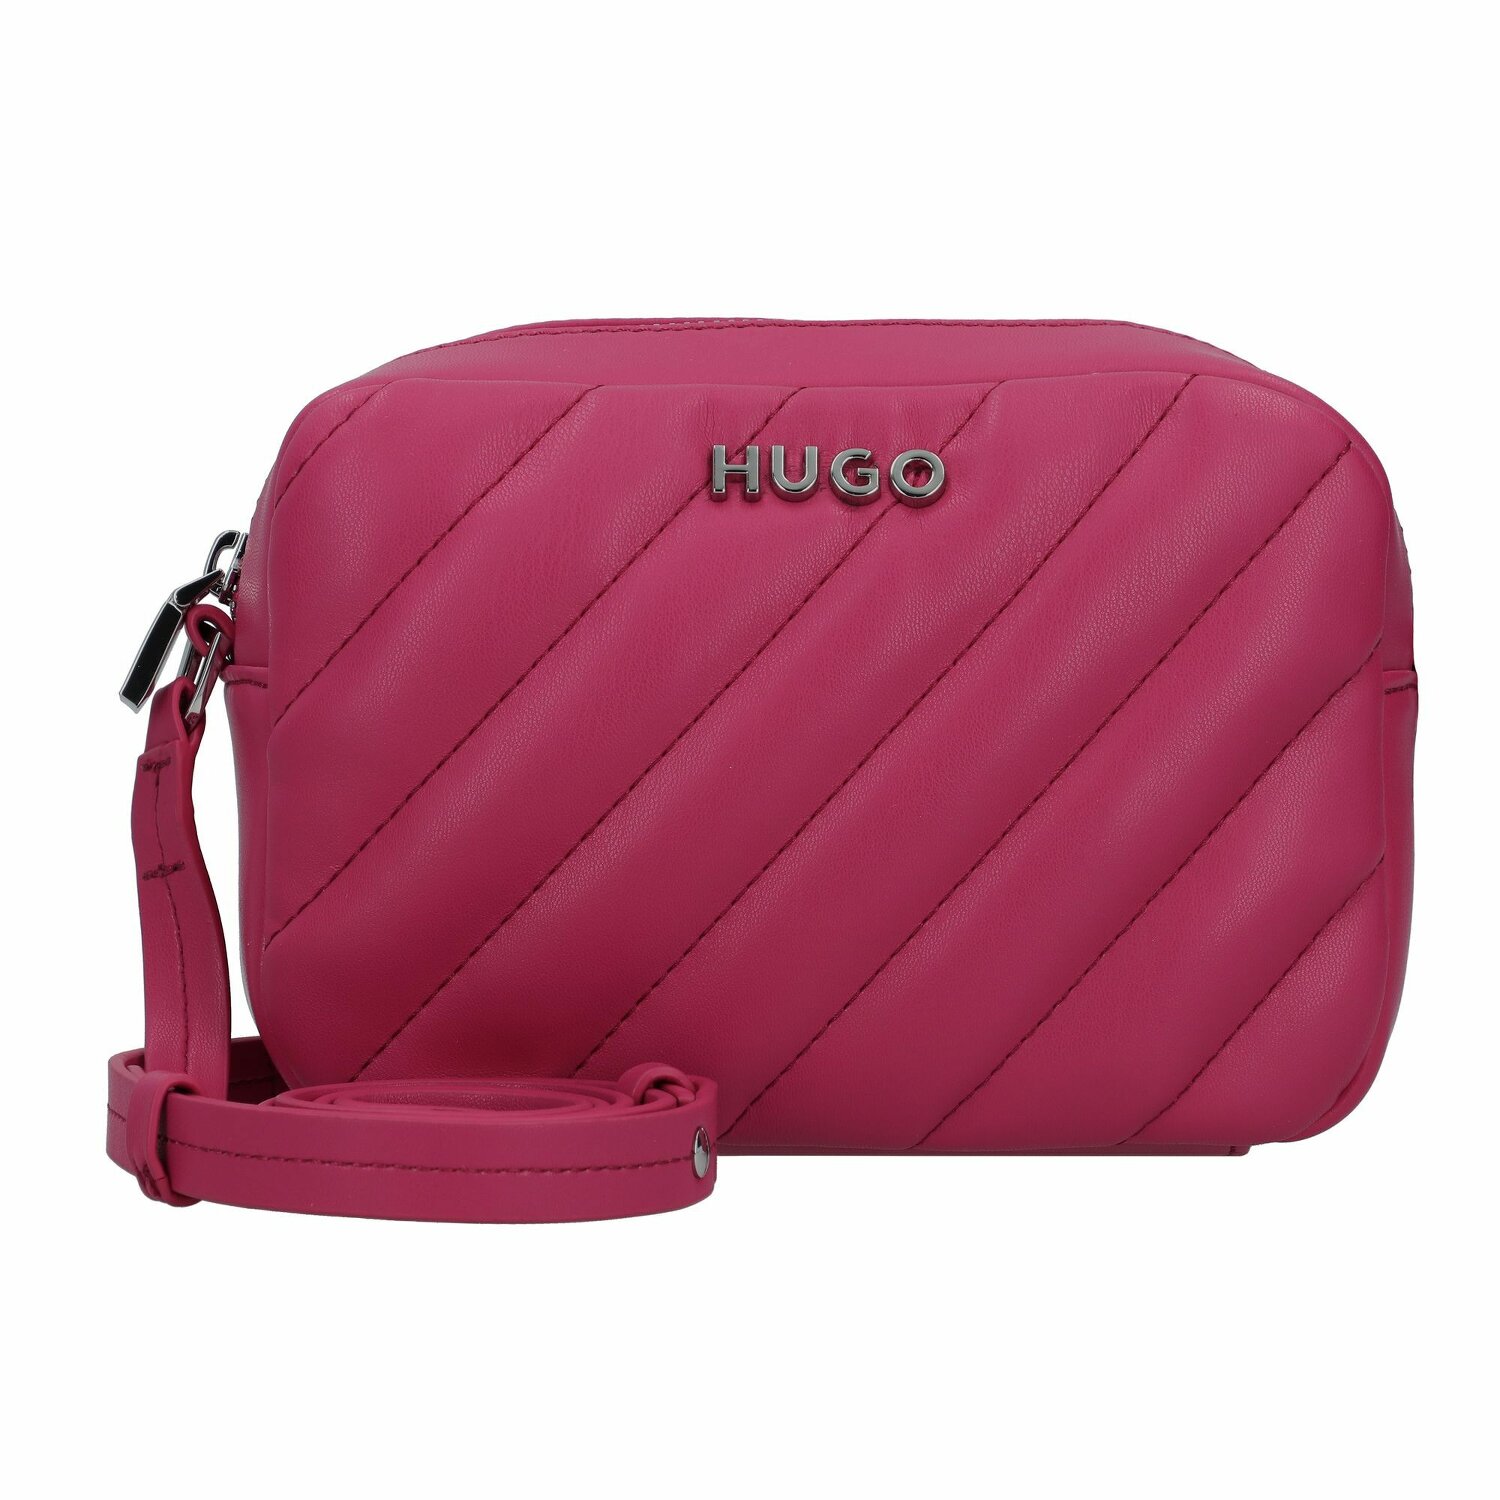 Lizzie | Umhängetasche medium pink bei Hugo 19 cm